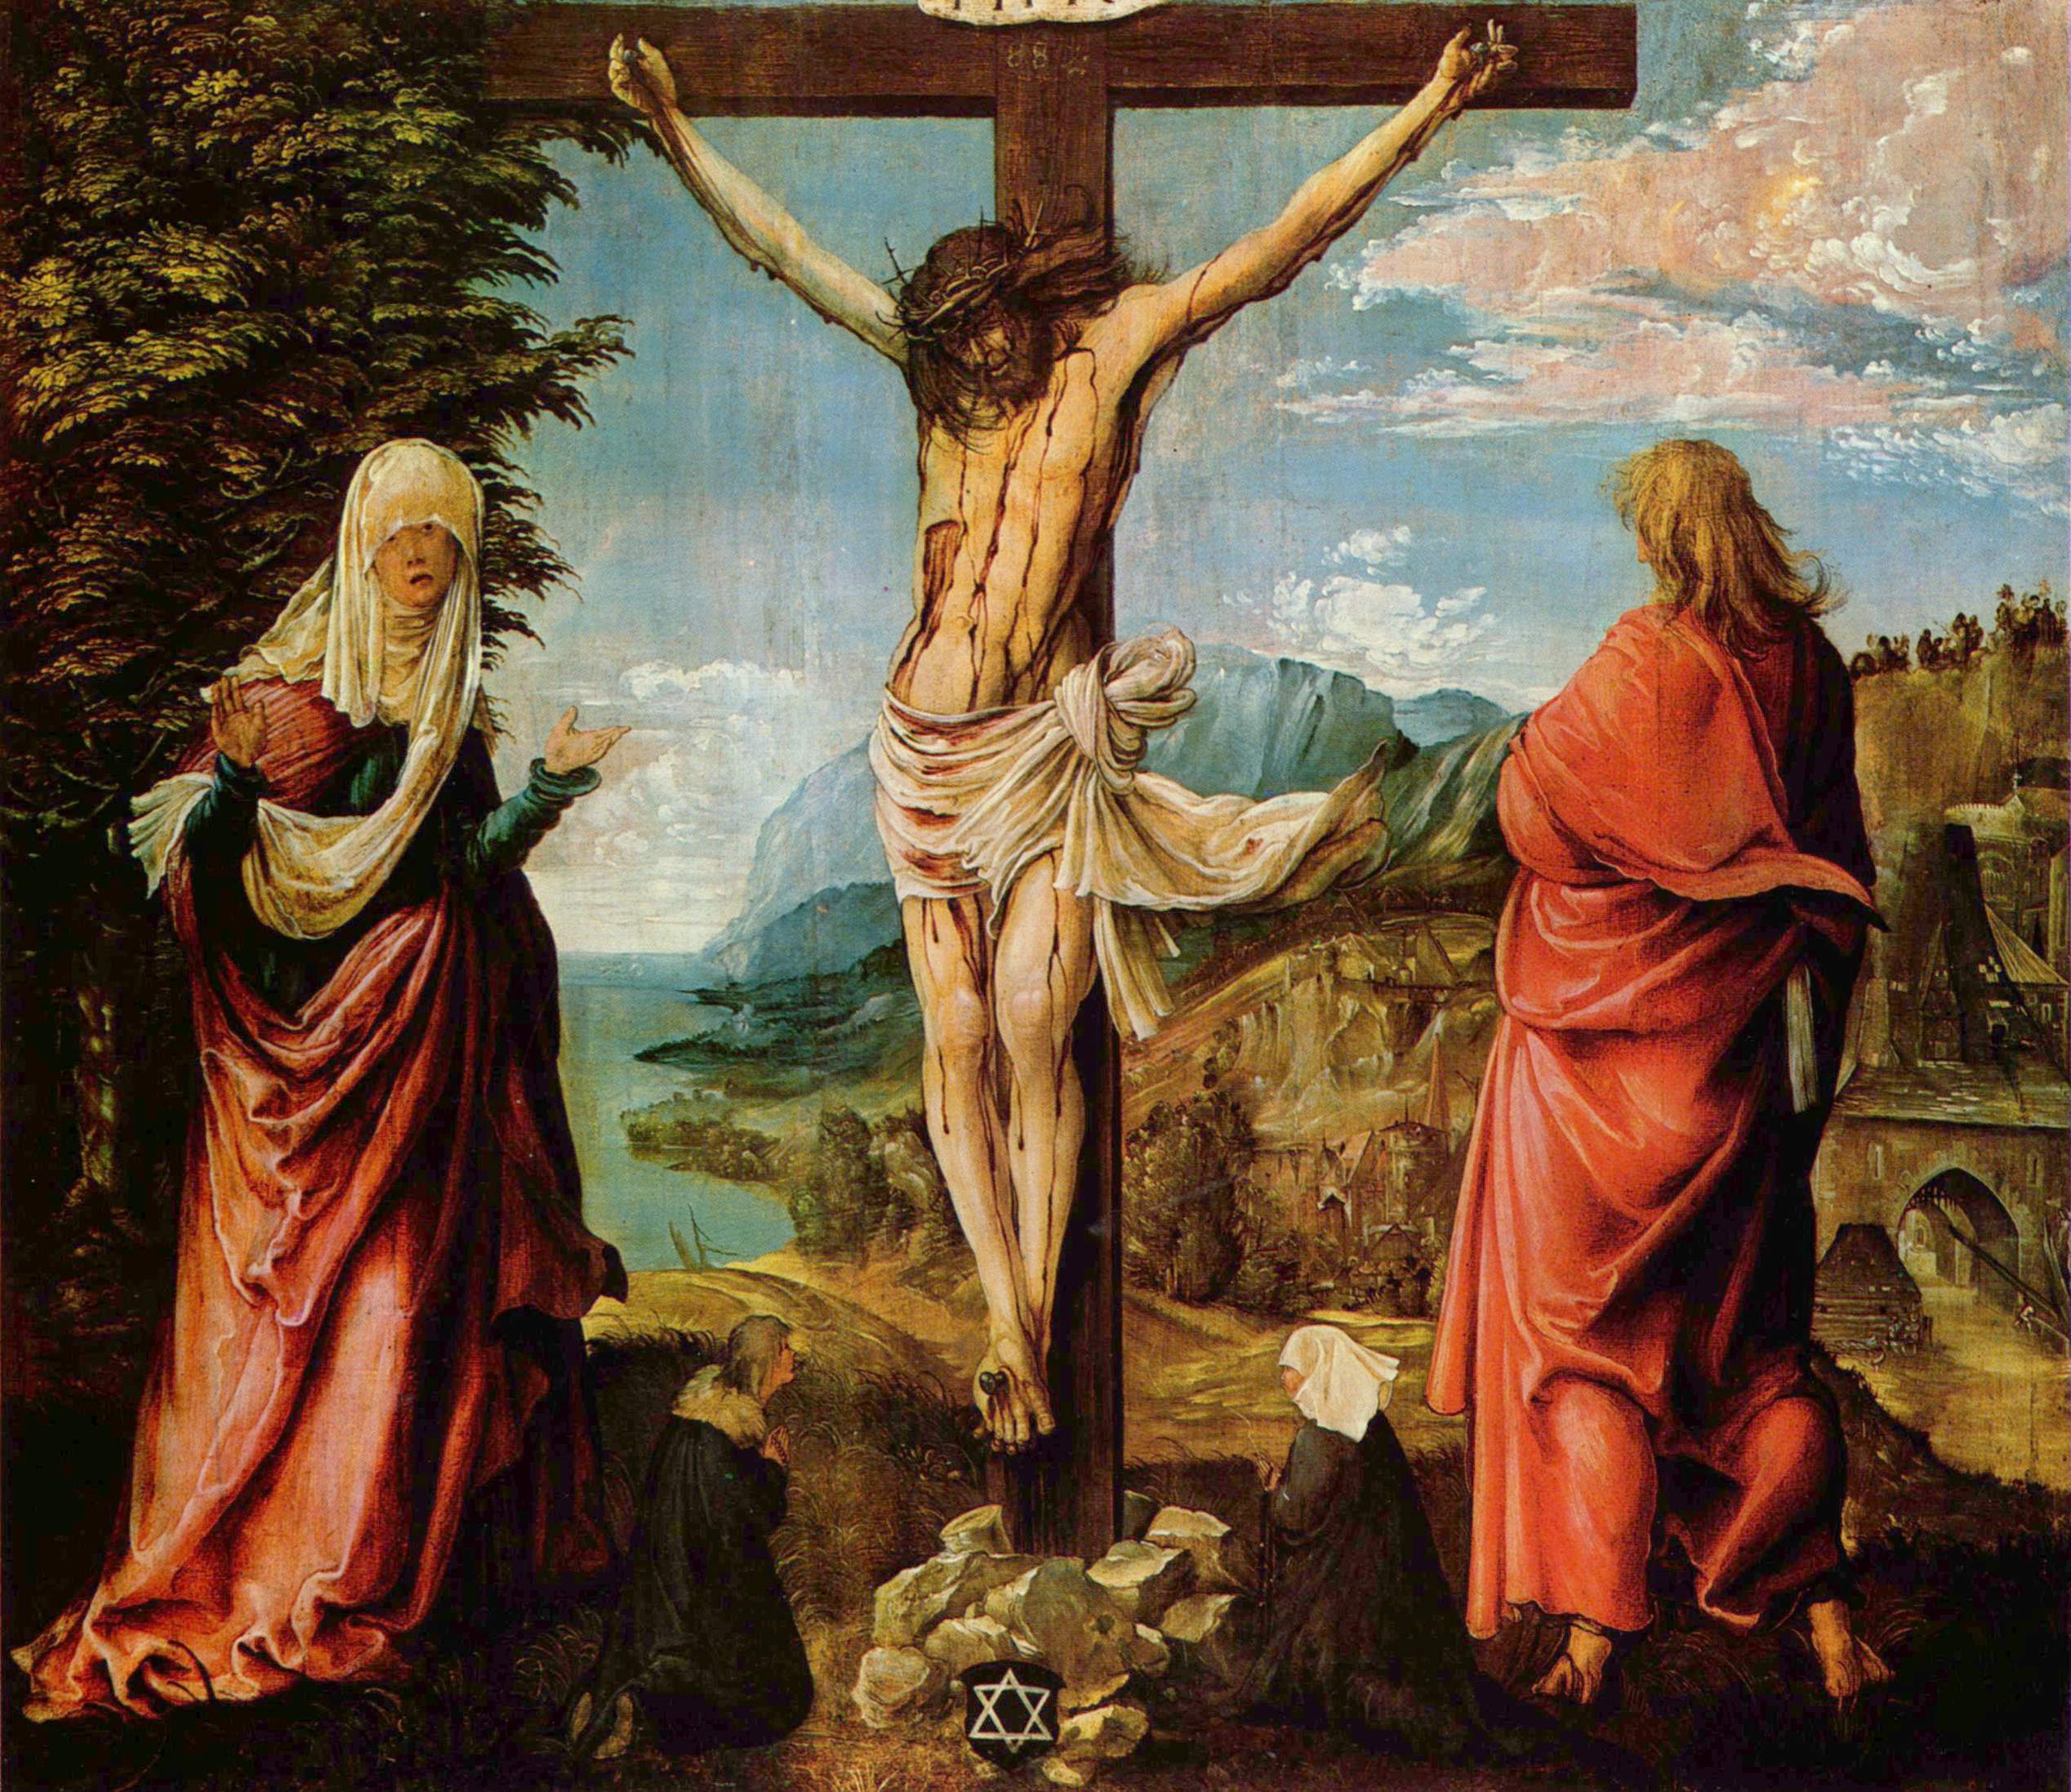 Альбрехт Альтдорфер. Распятие. Христос на кресте, Мария и Иоанн. 1515-1516.